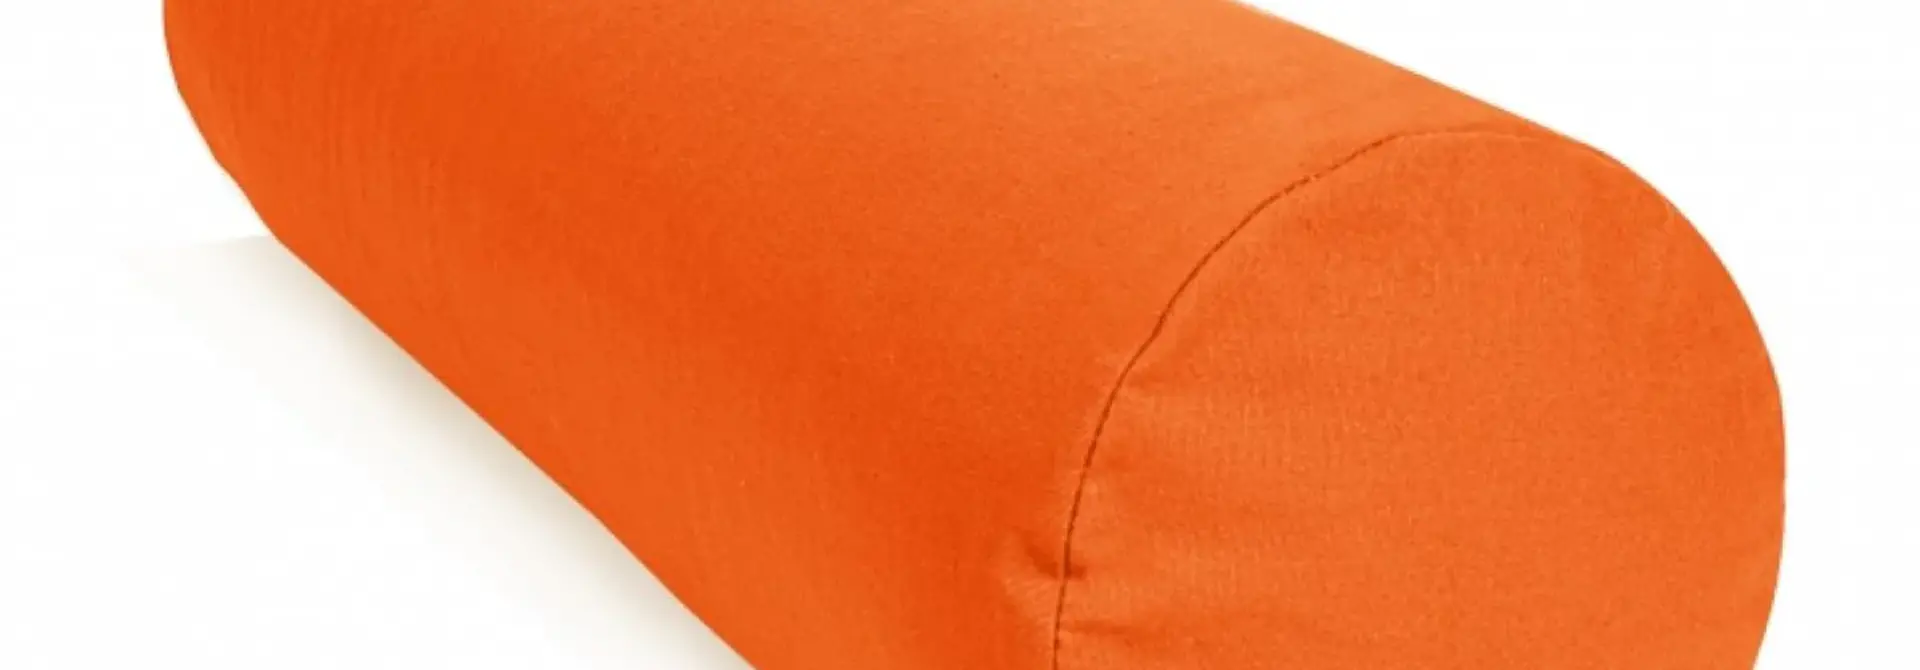 Yoga Bolster Rund Buchweizen Deluxe - Orange